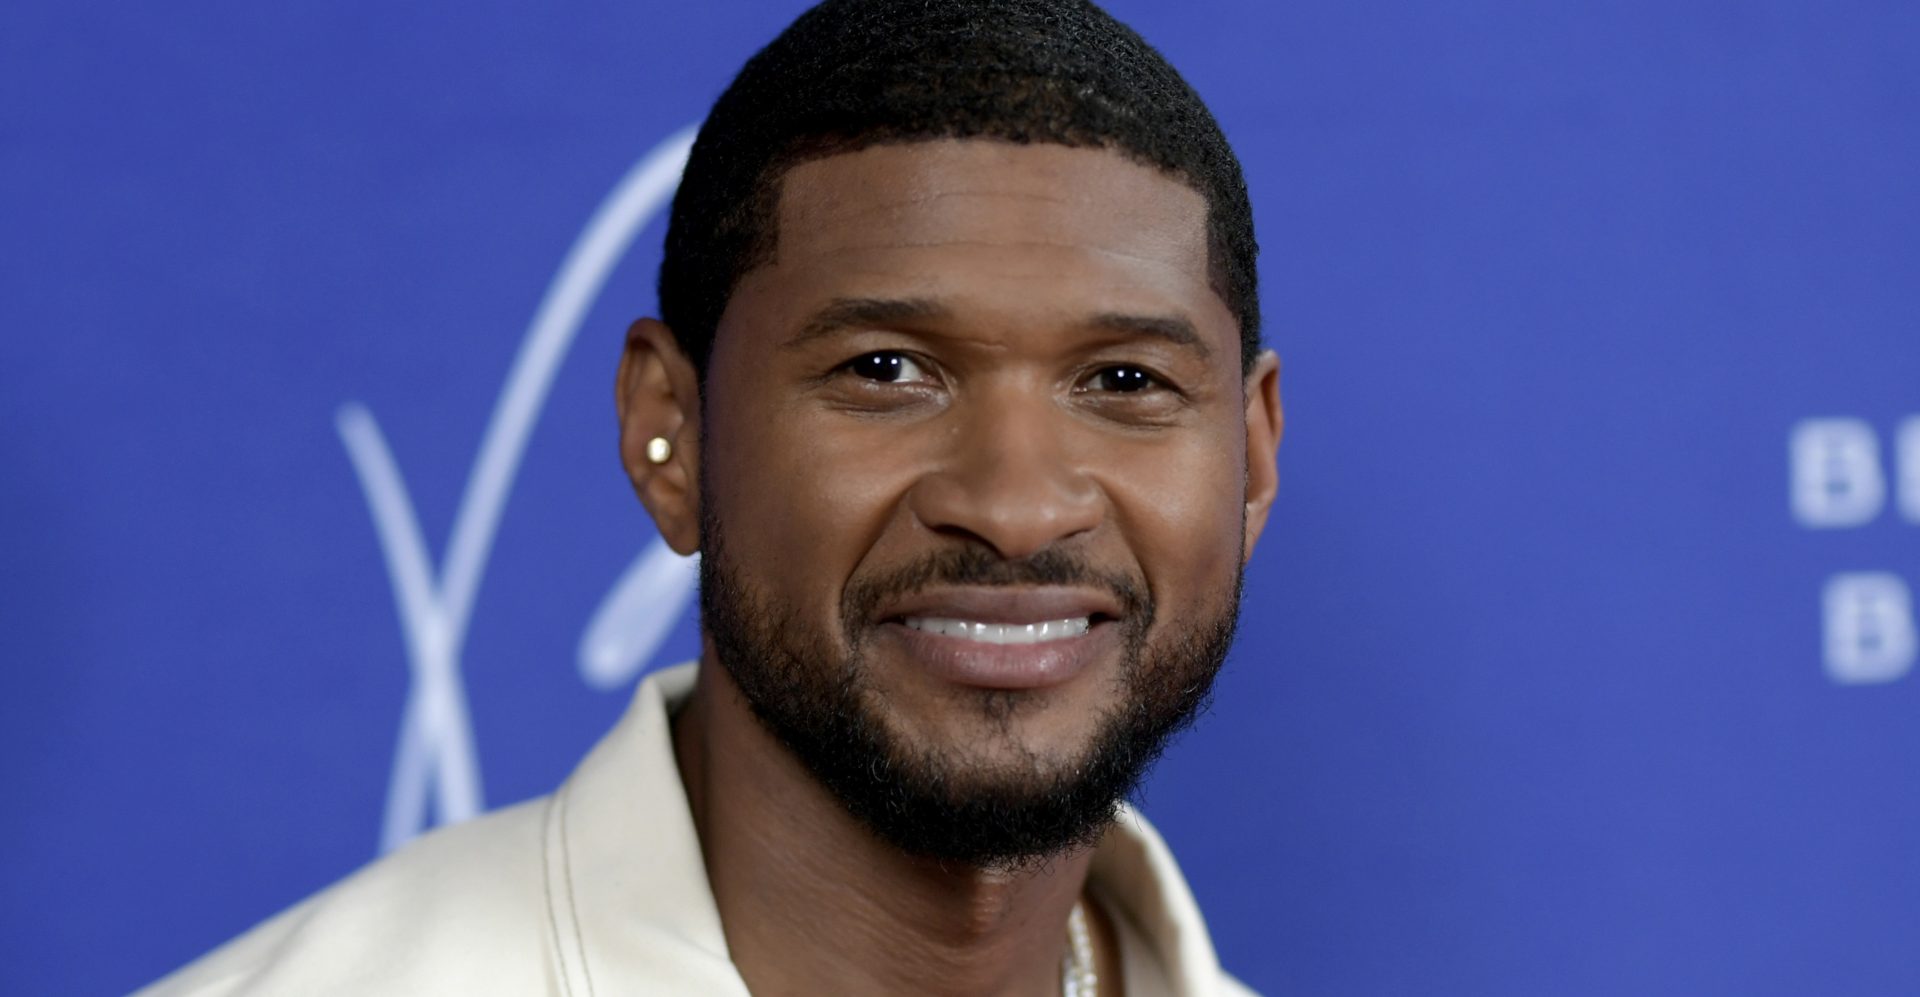 Les fans débattent si Usher pouvait organiser un spectacle à la mi-temps du Super Bowl